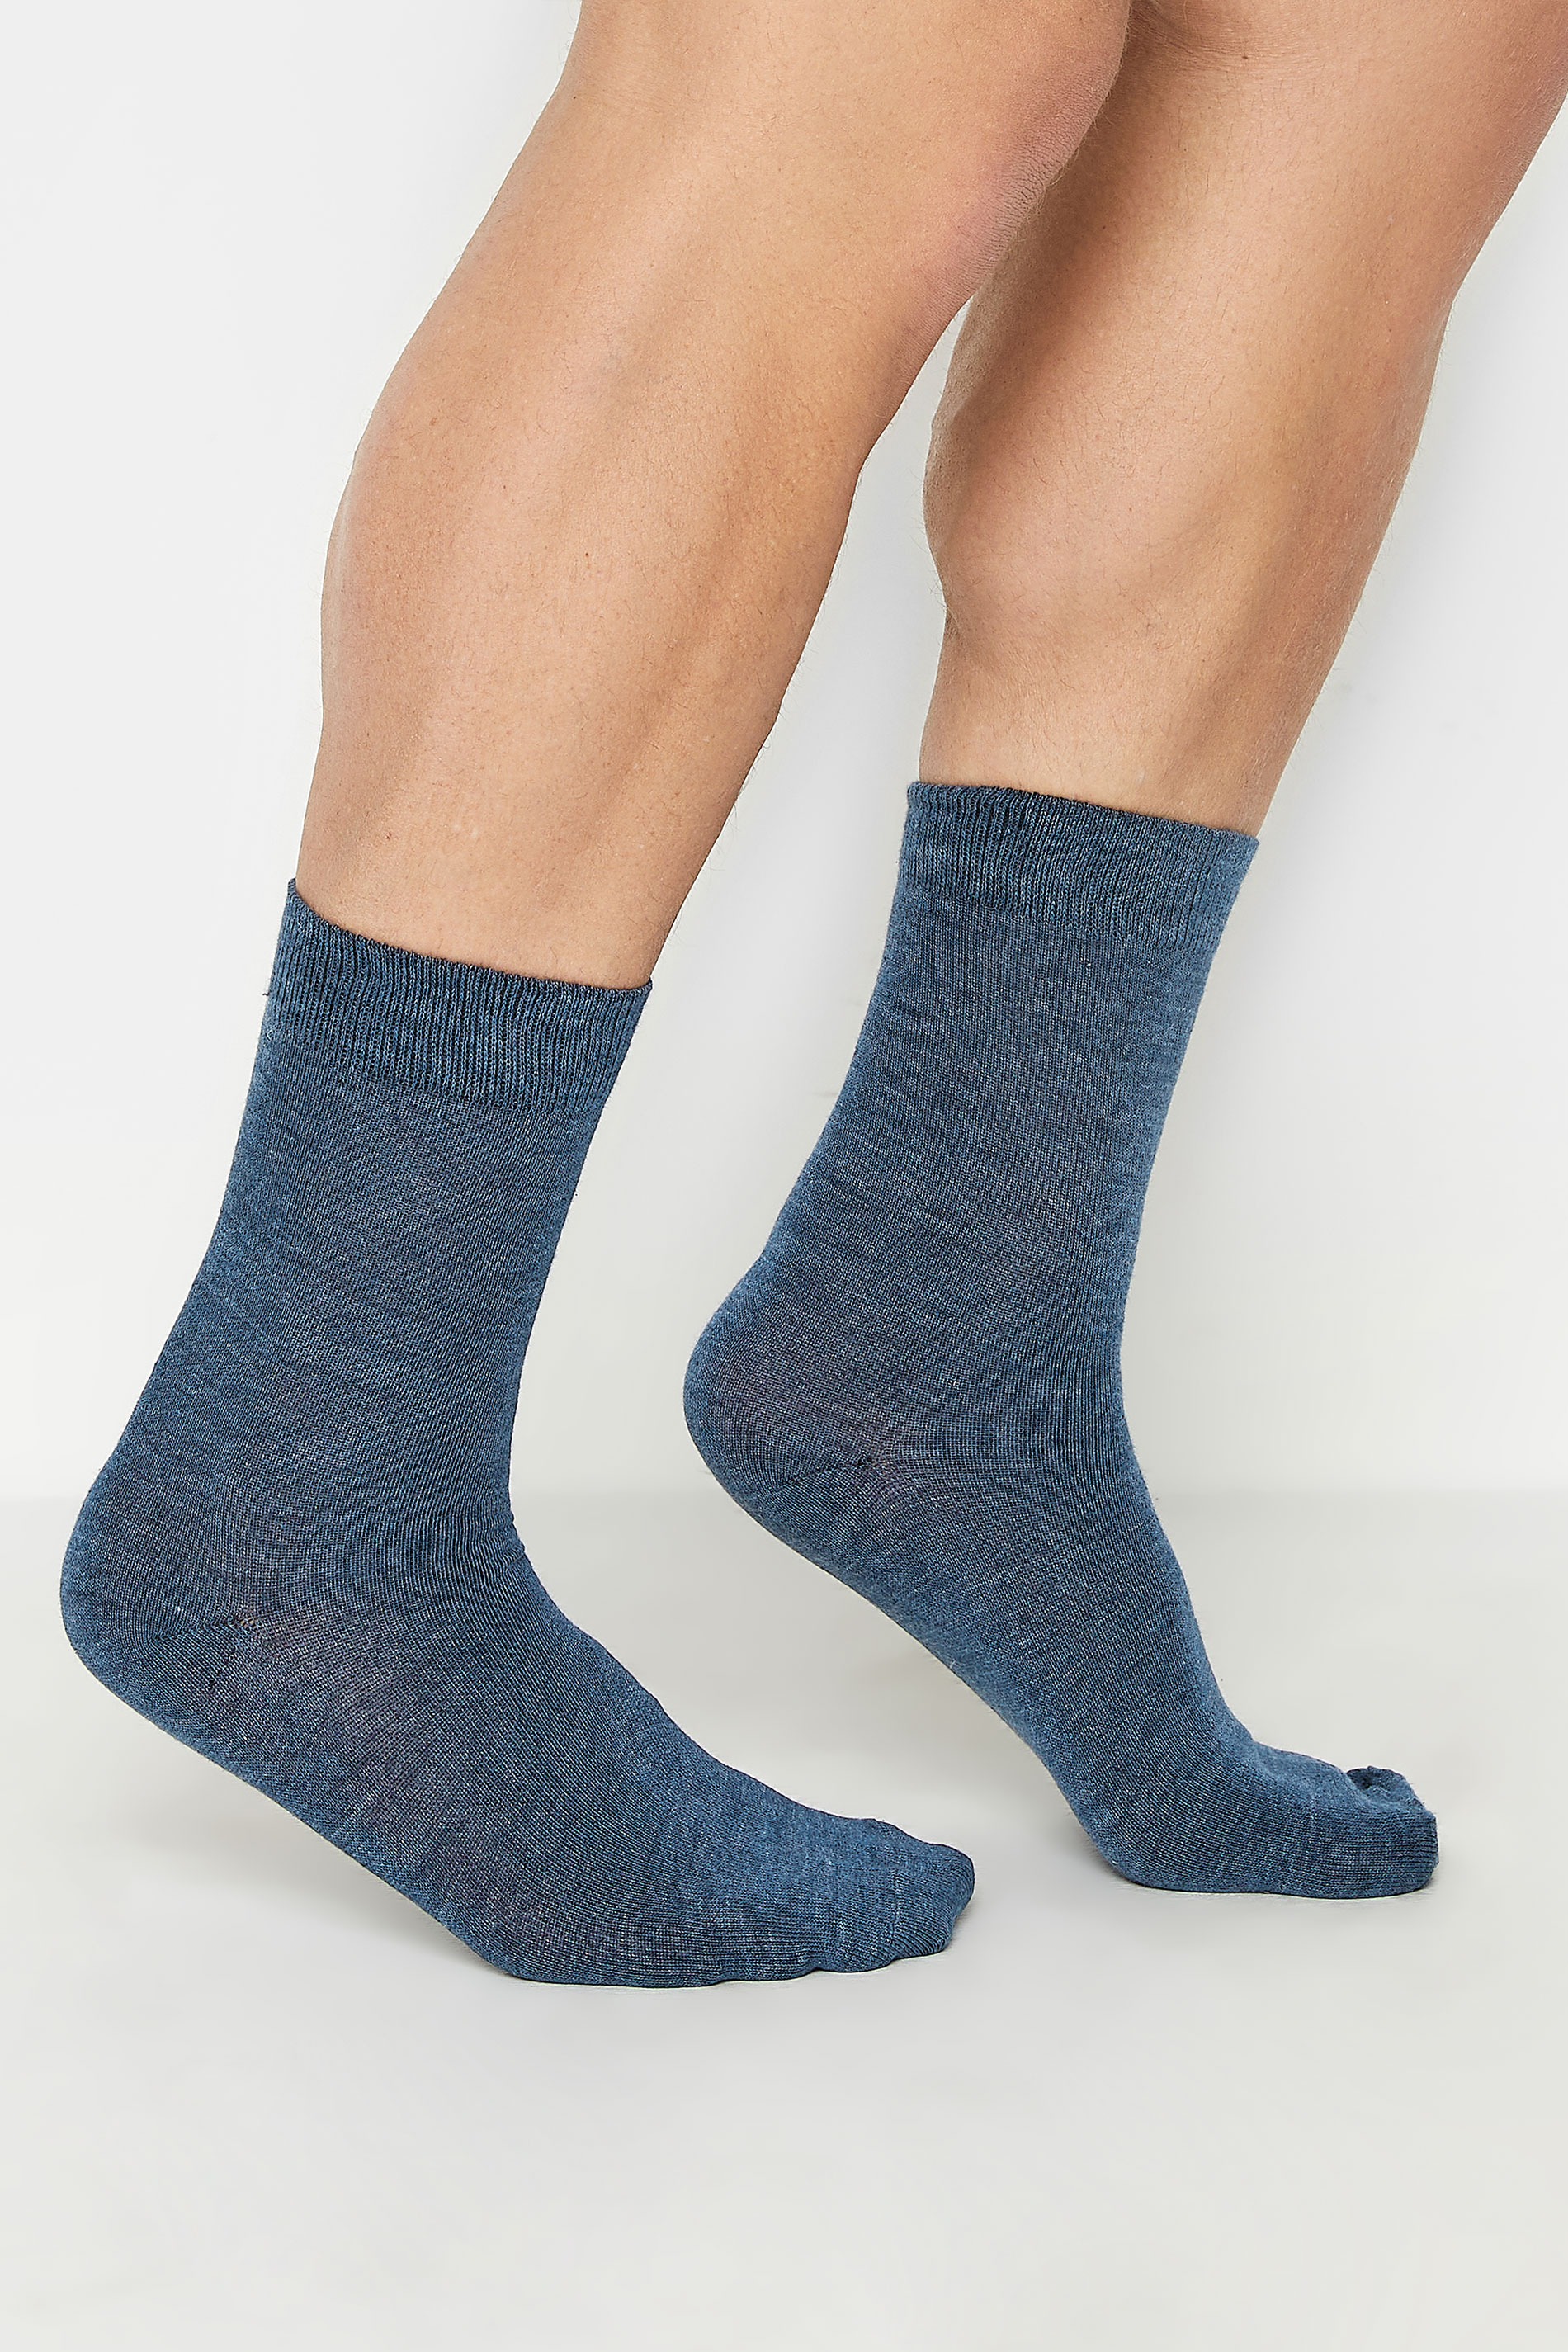 BadRhino Blue & Grey 5 Pack Ankle Socks | BadRhino 2